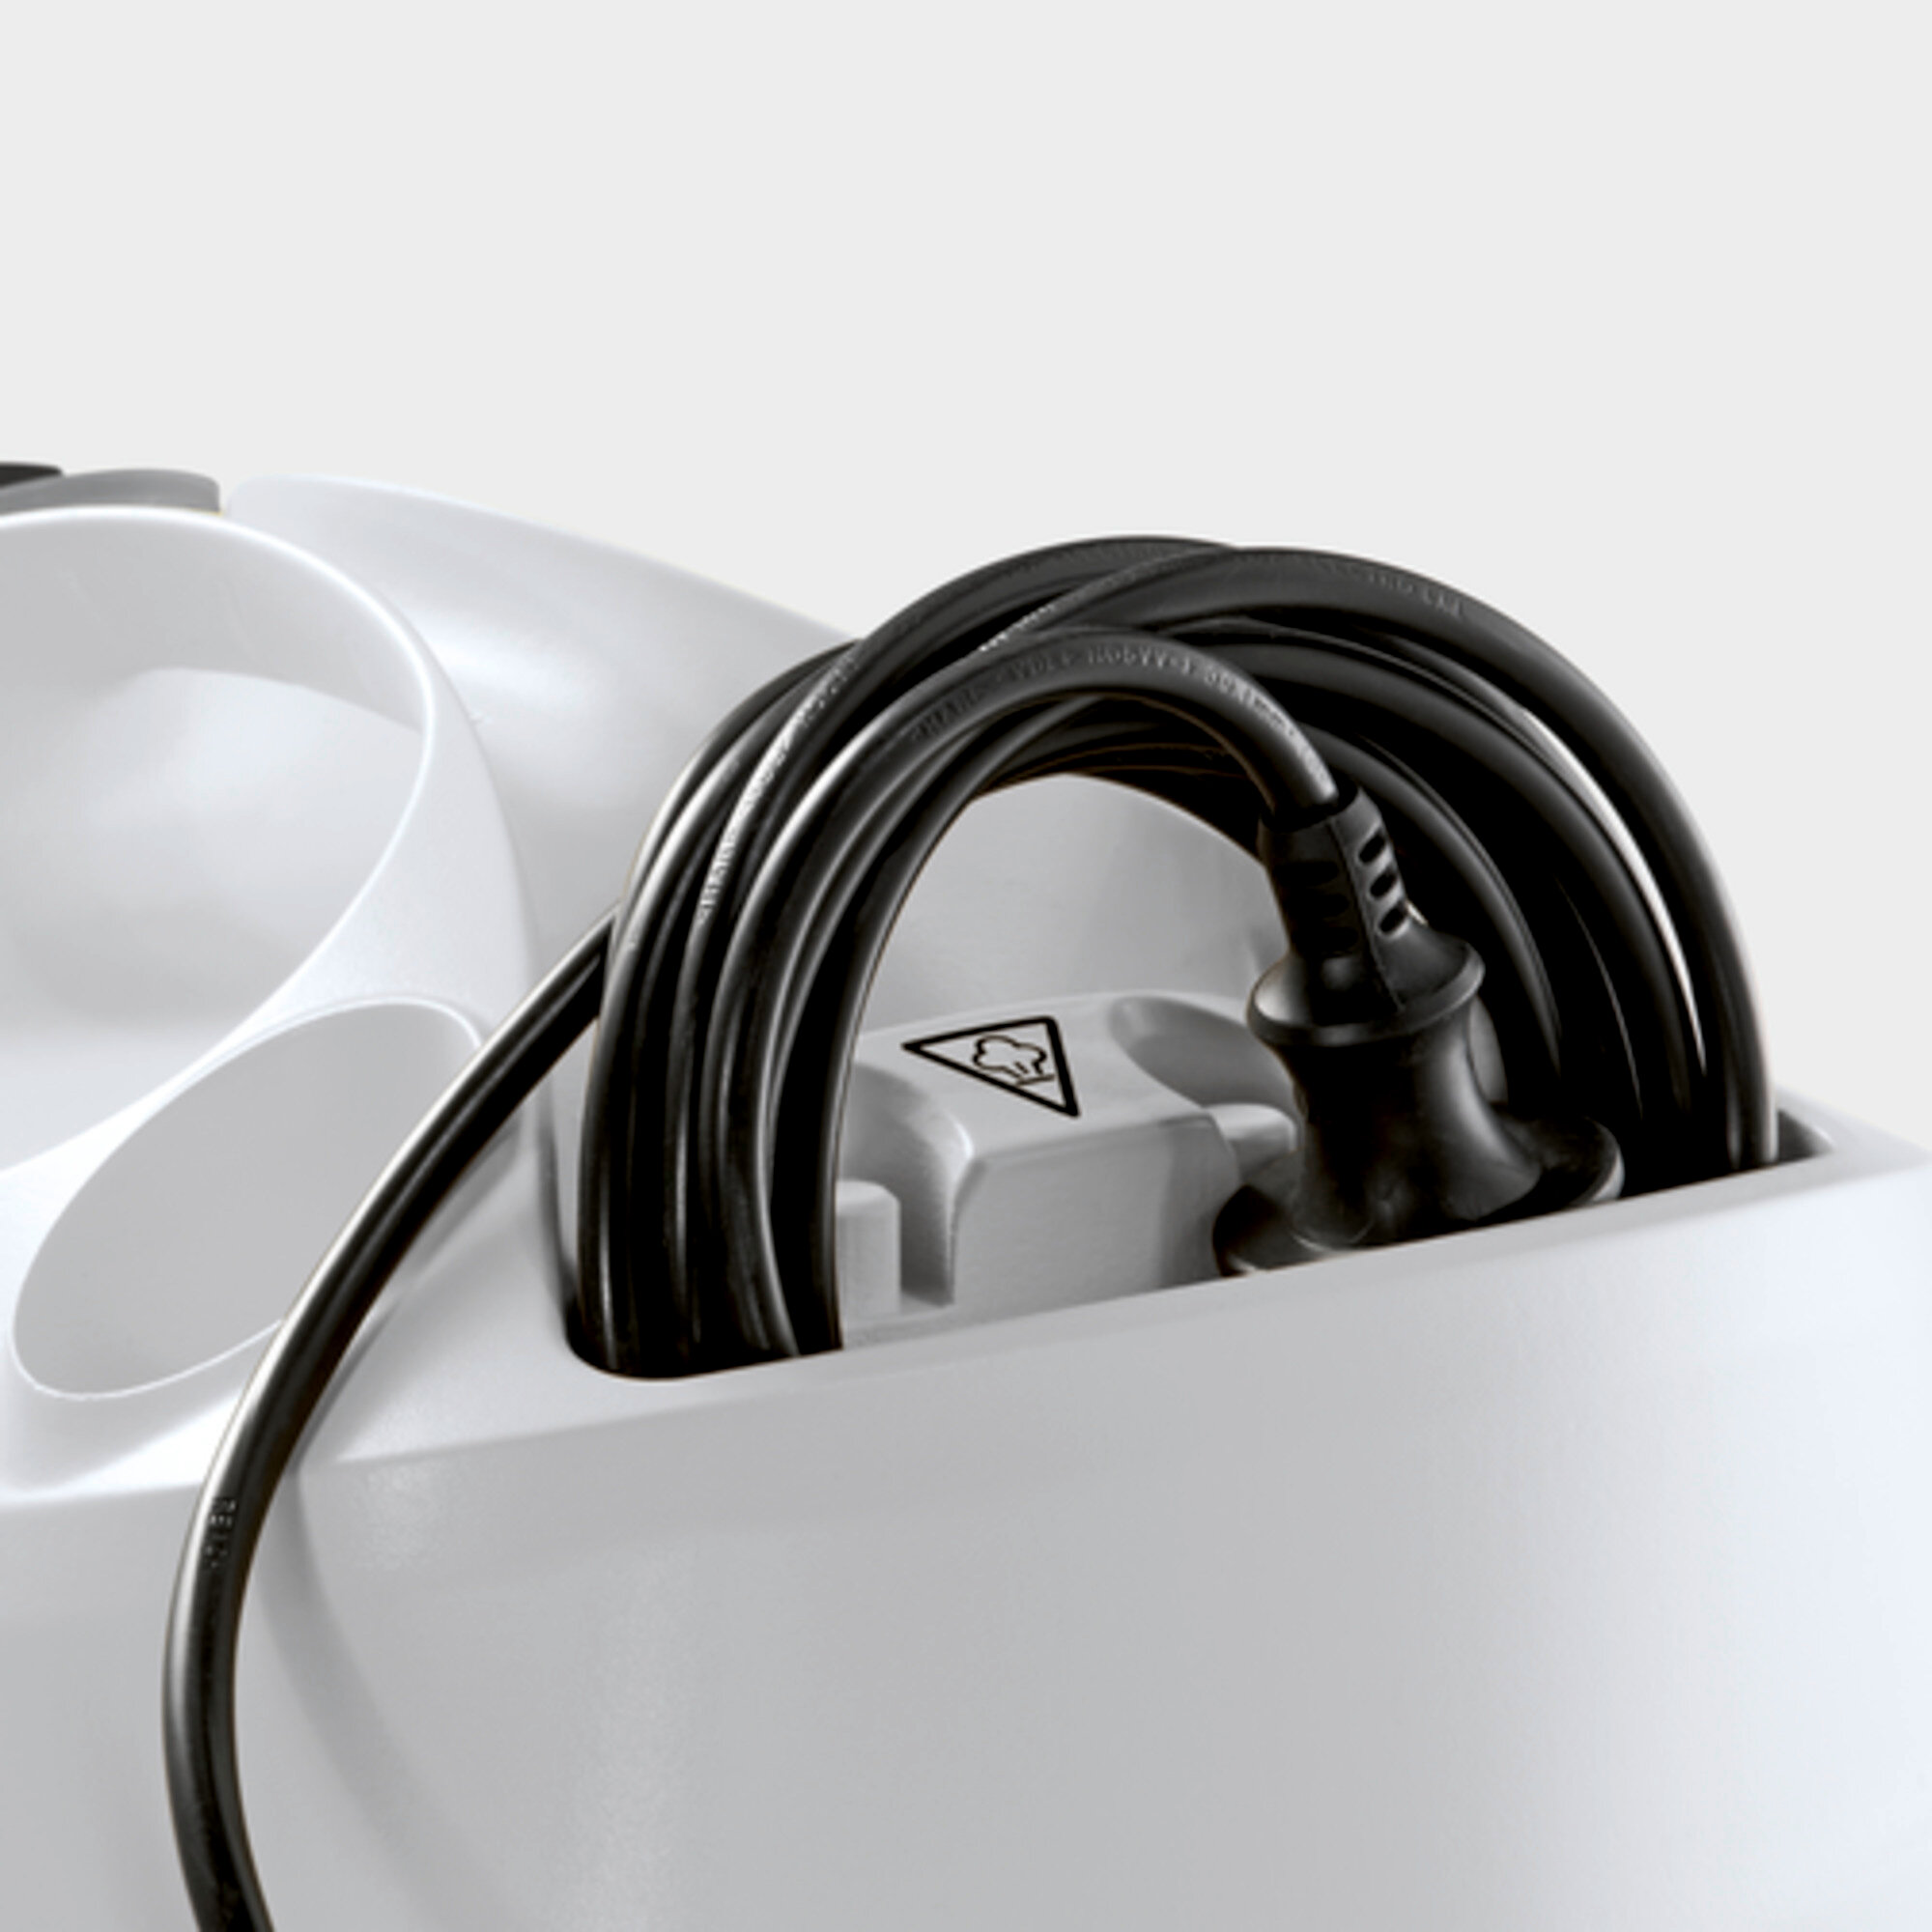 Пароочиститель SC 4 EasyFix Premium Iron: Отсек для хранения кабеля